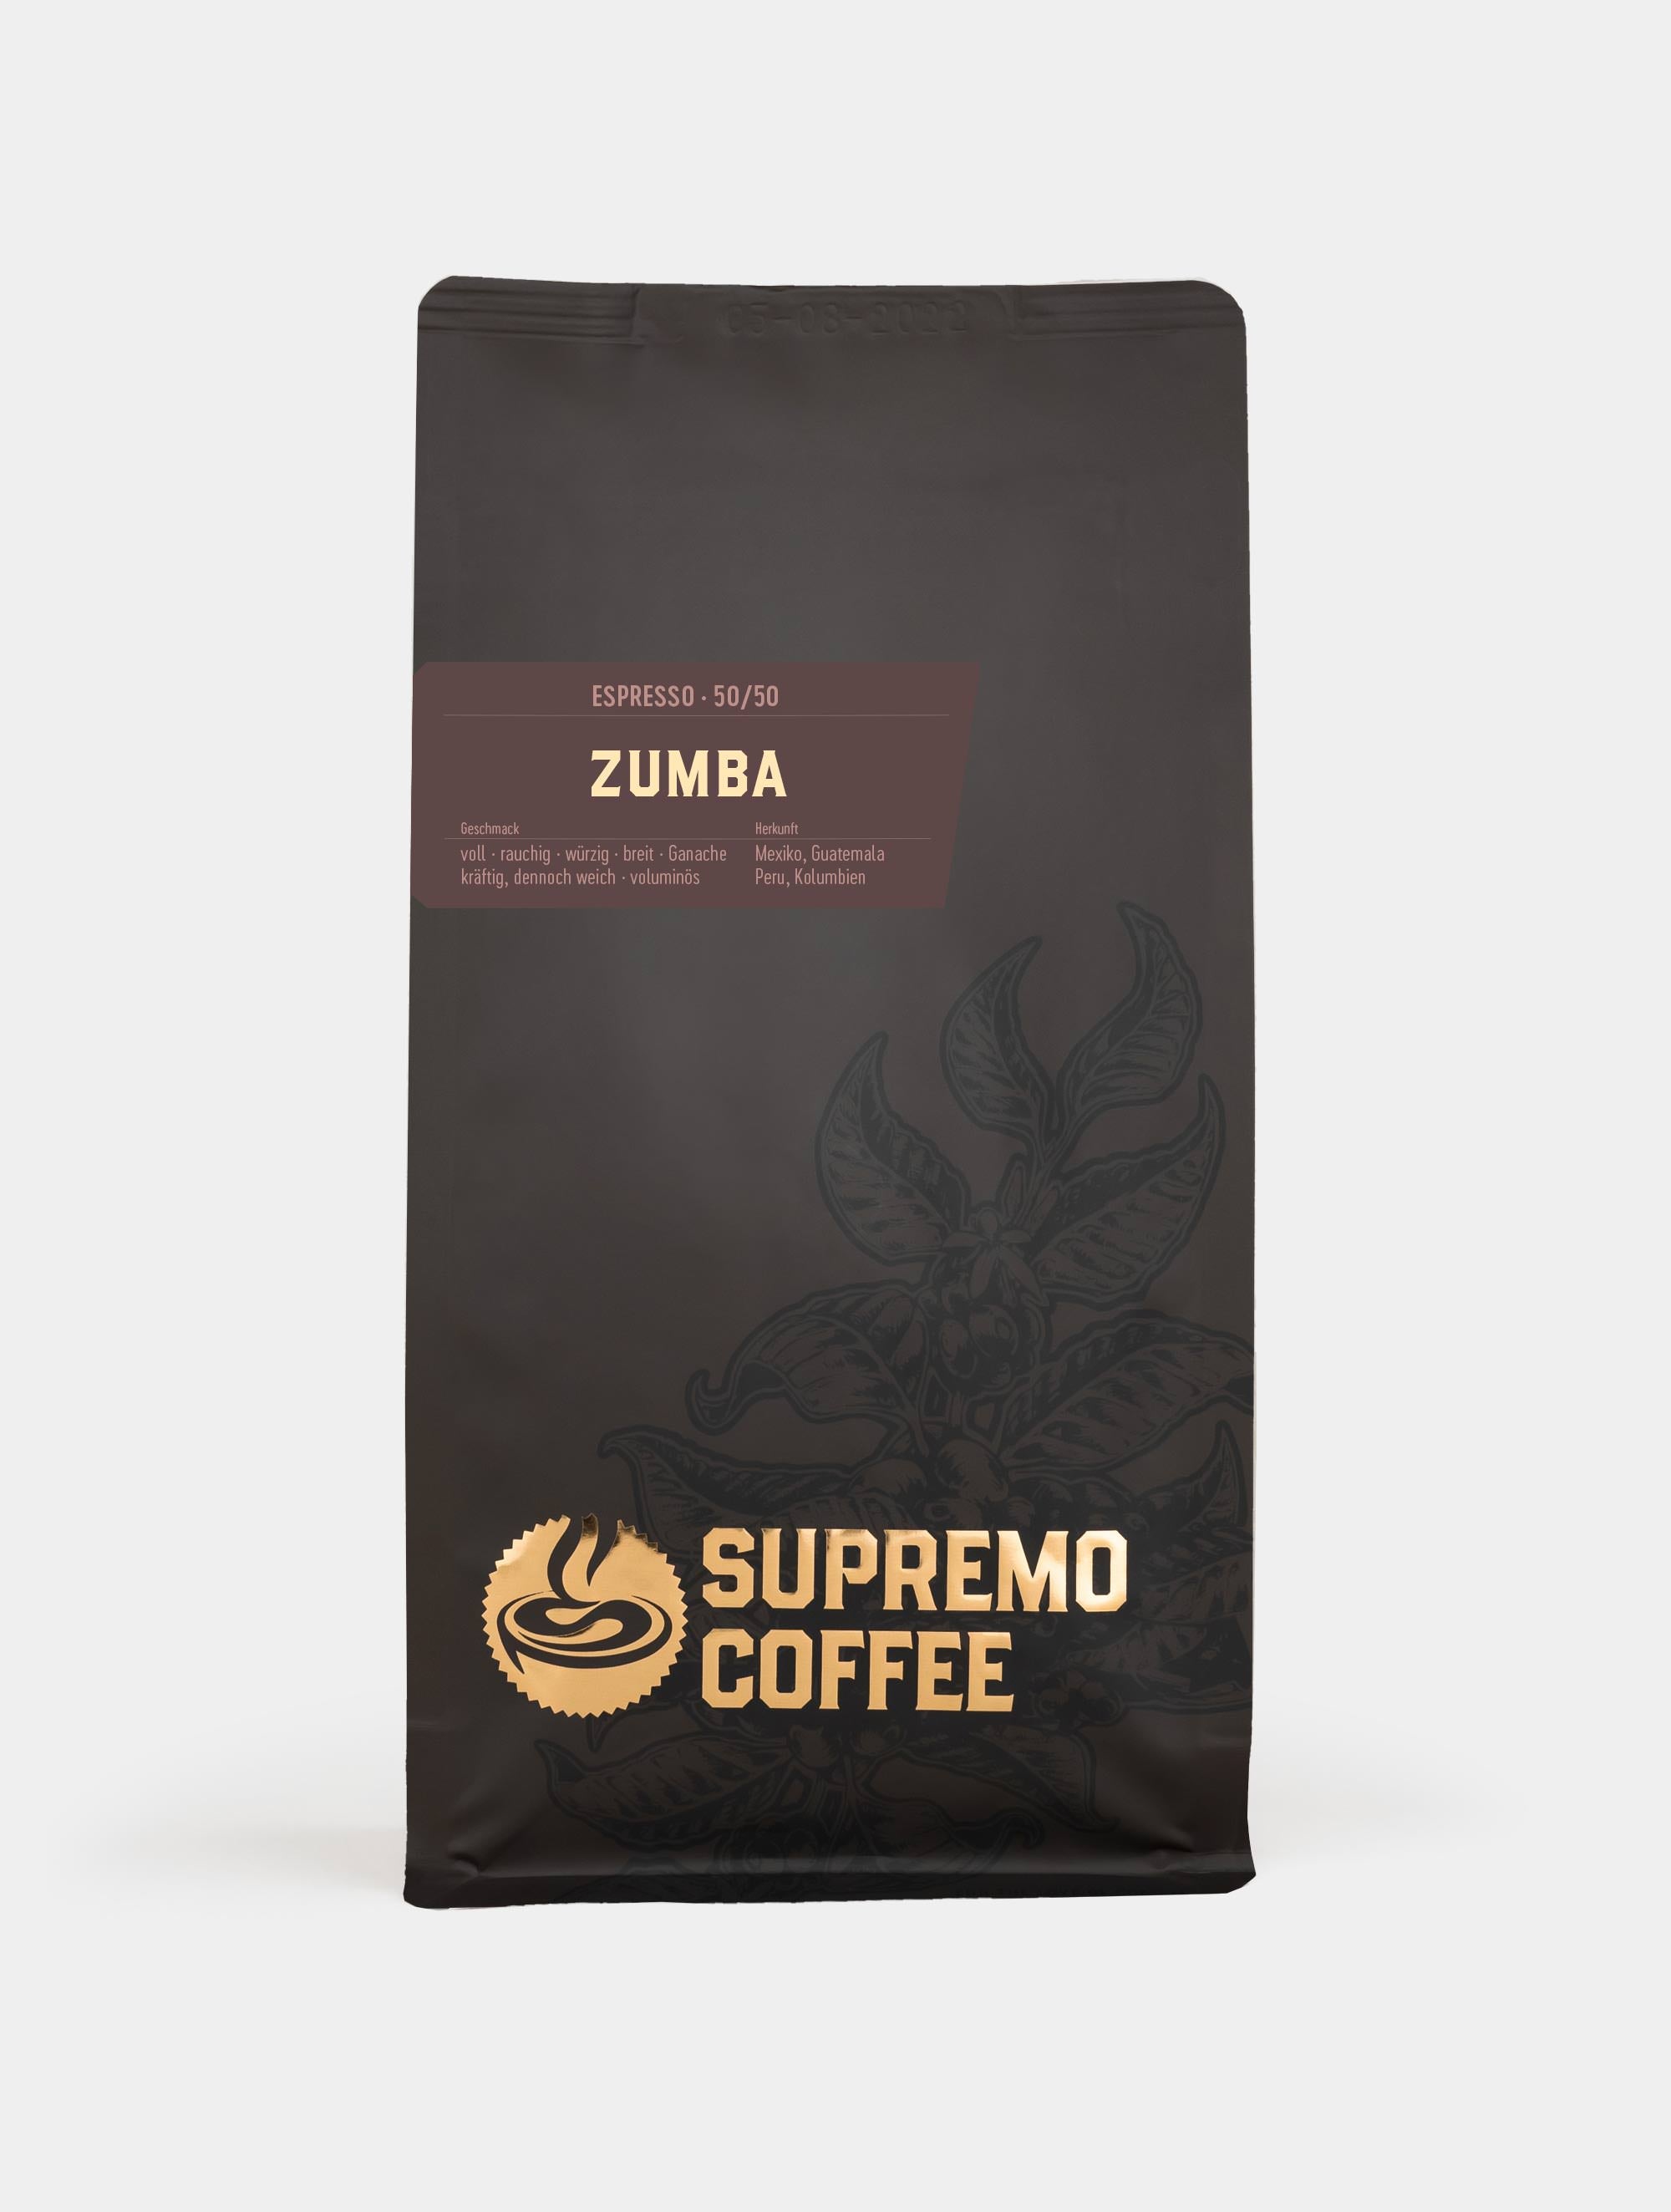 Zumba, Espresso 50/50 | SUPREMO Coffee